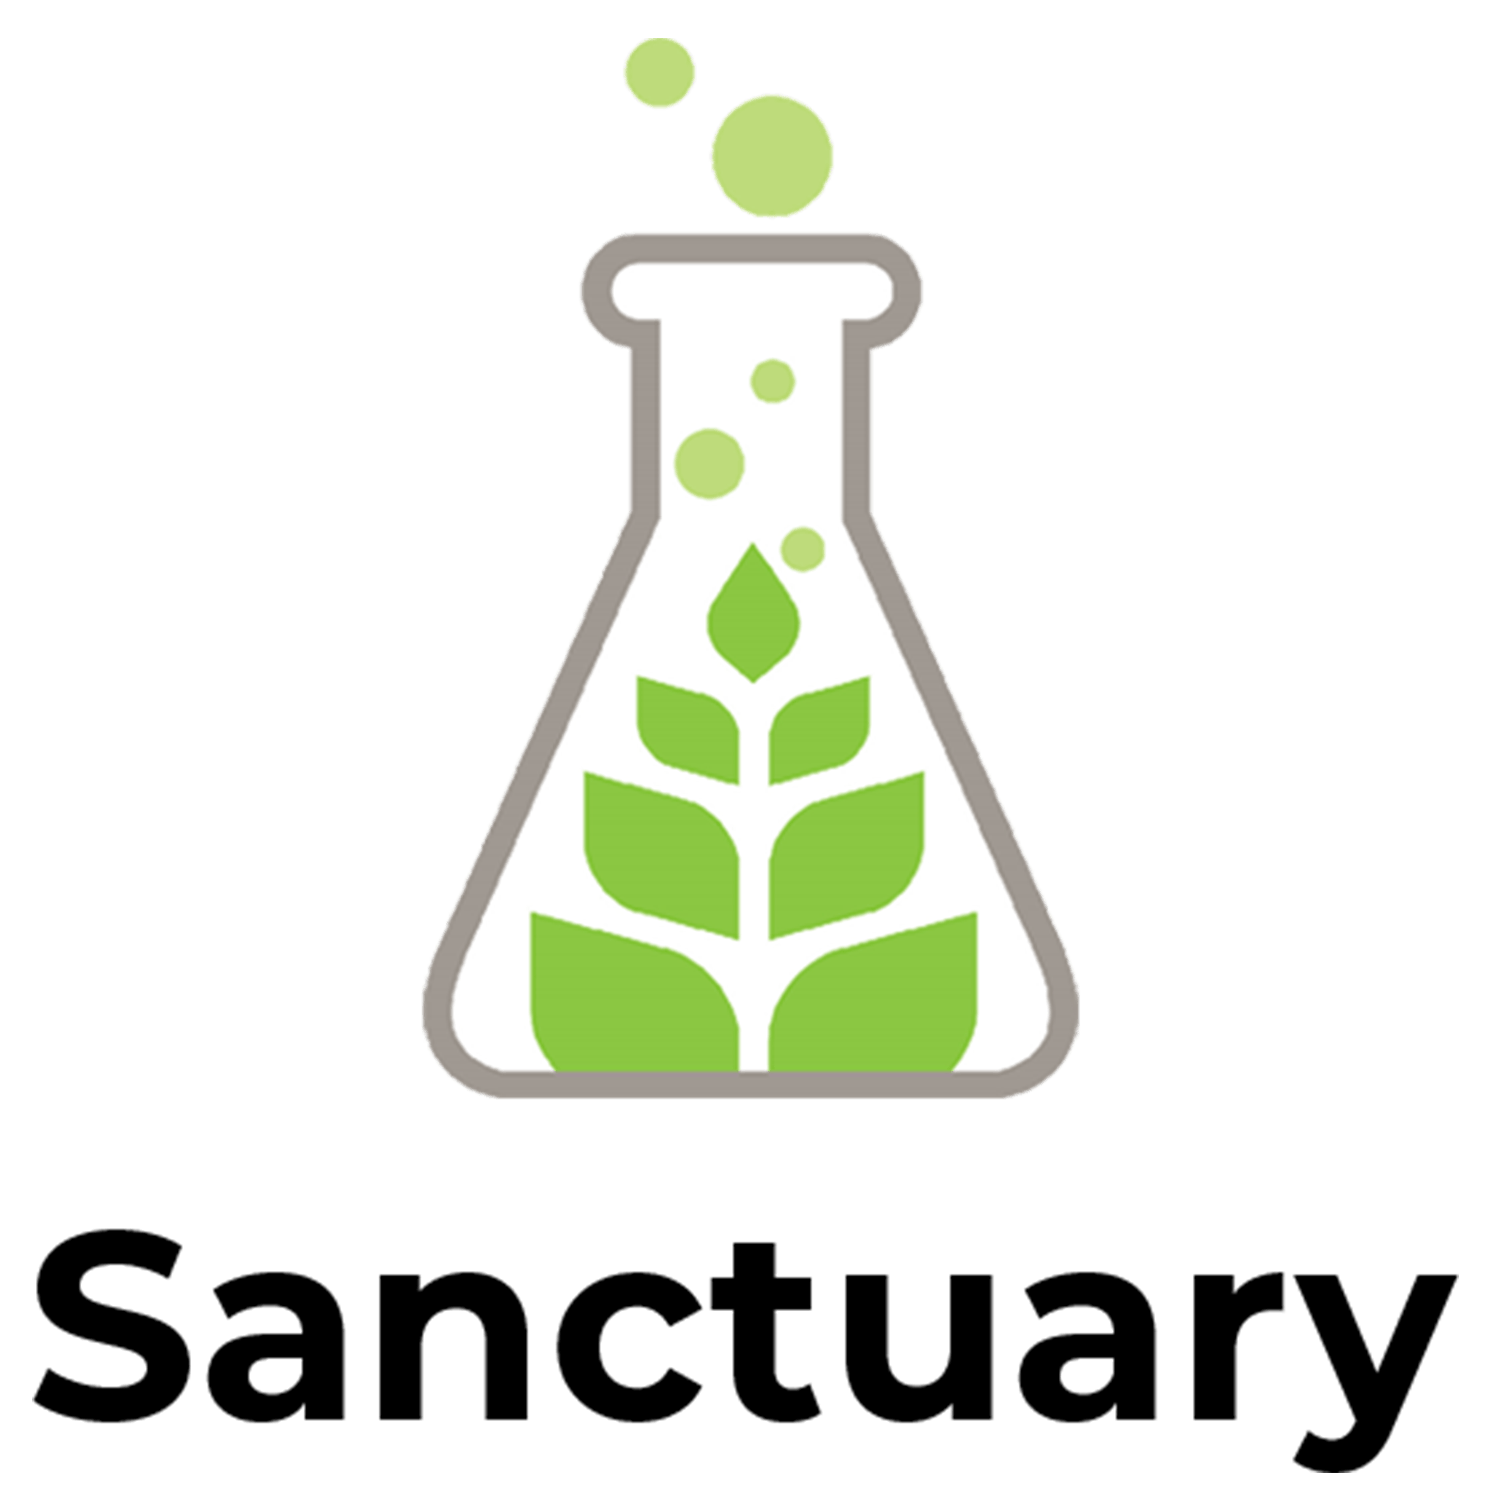 Sanctuary - Gardner